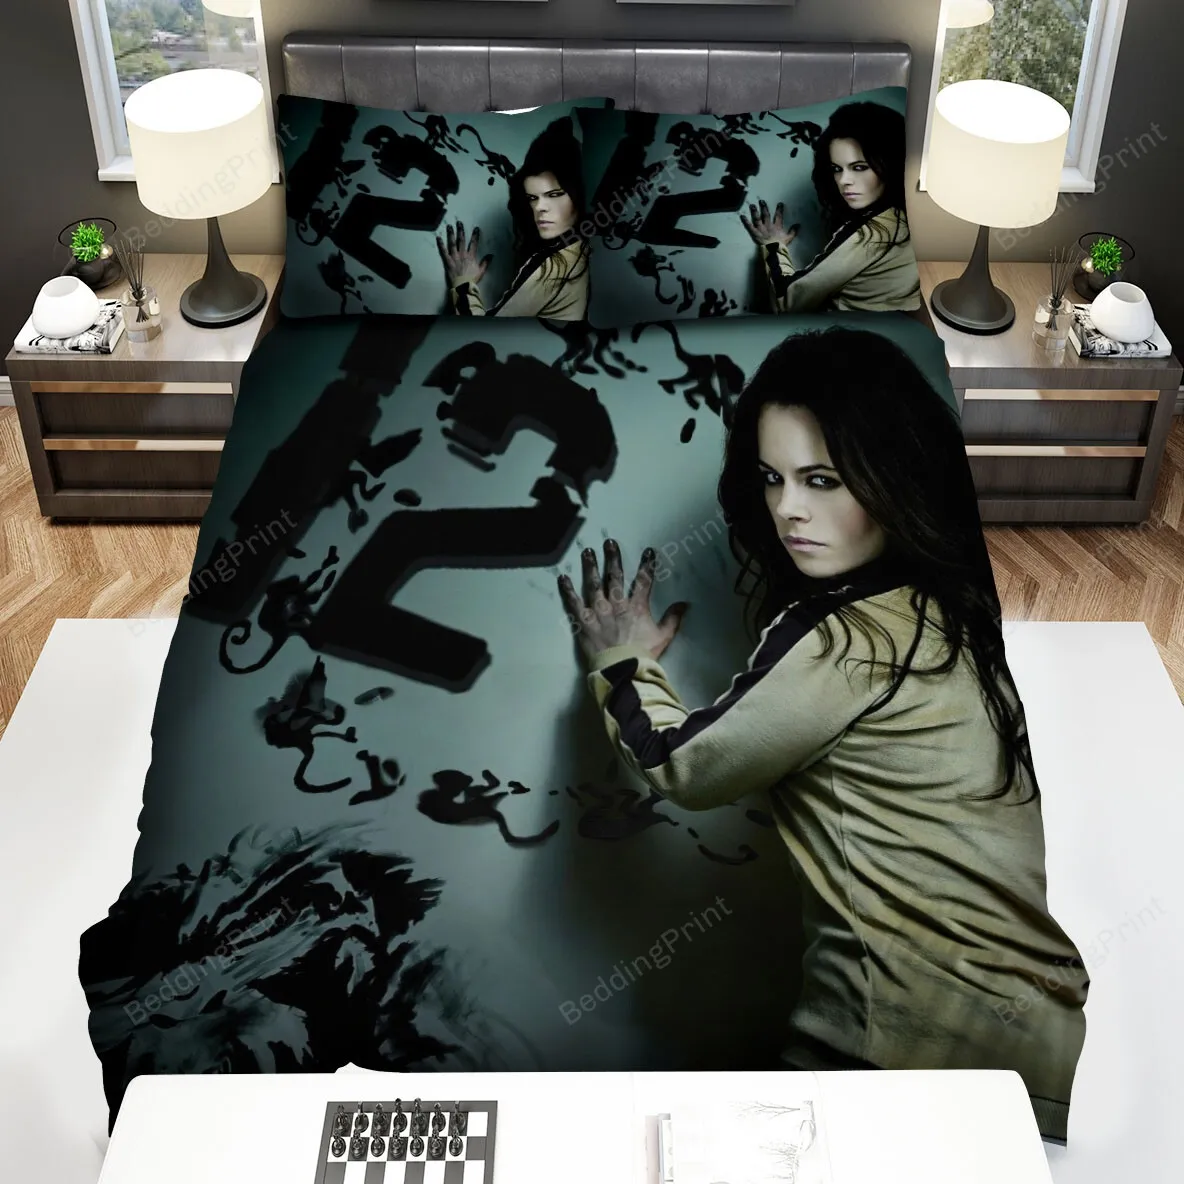 12 Monkeys (20152018) Poster Movie Poster Bed Sheets Spread Comforter Duvet Cover Bedding Sets Ver 4